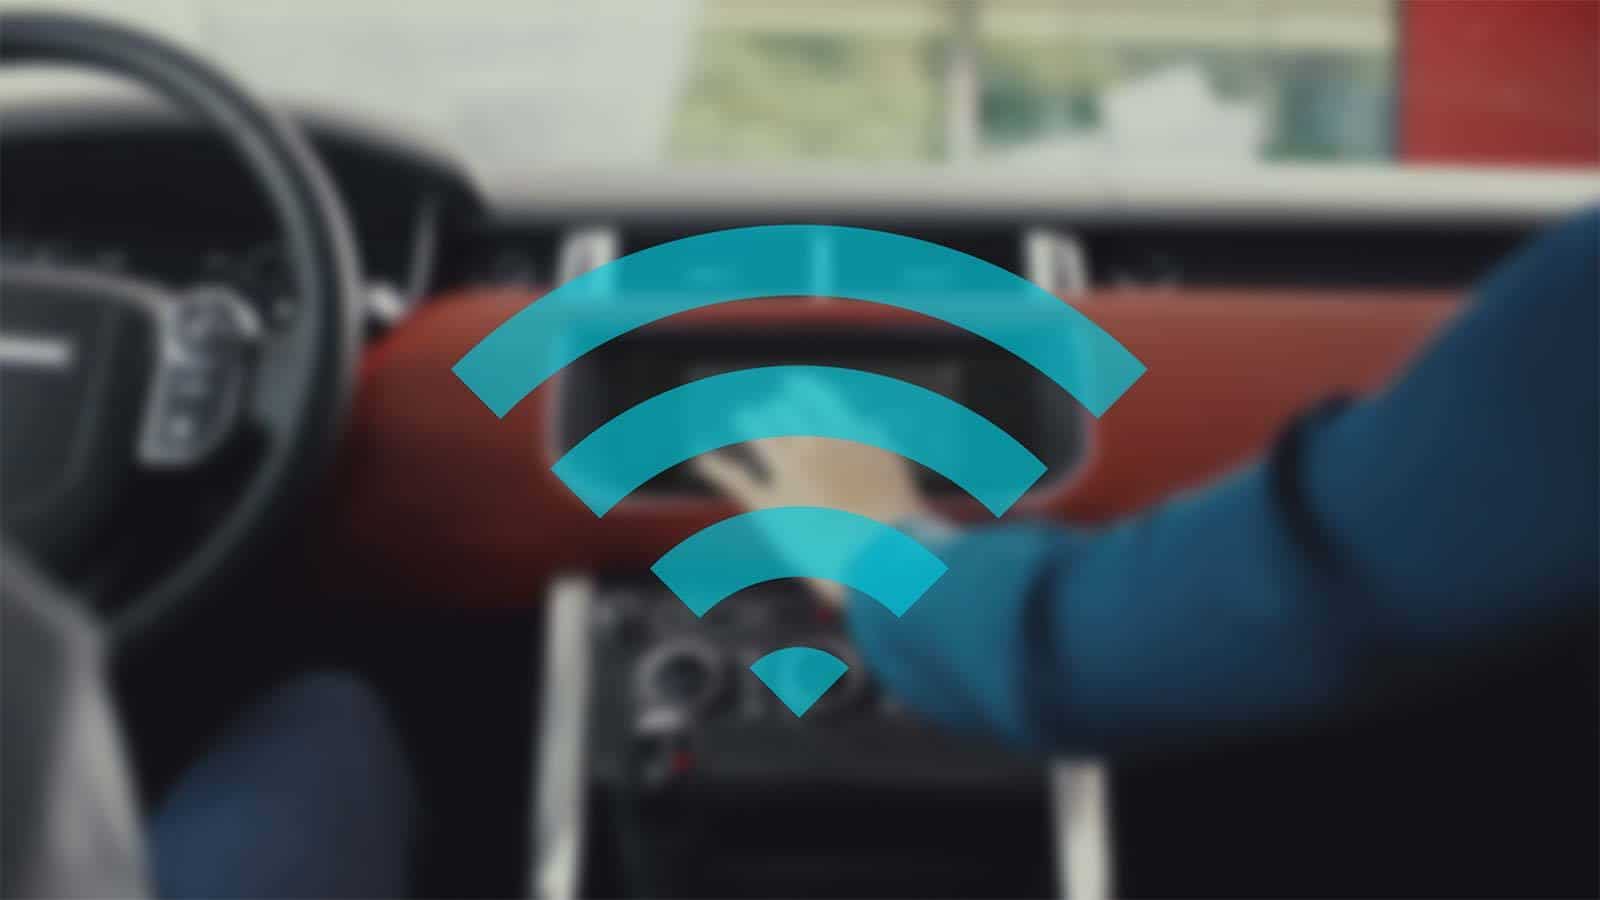 Wi-Fi Connectivity representation